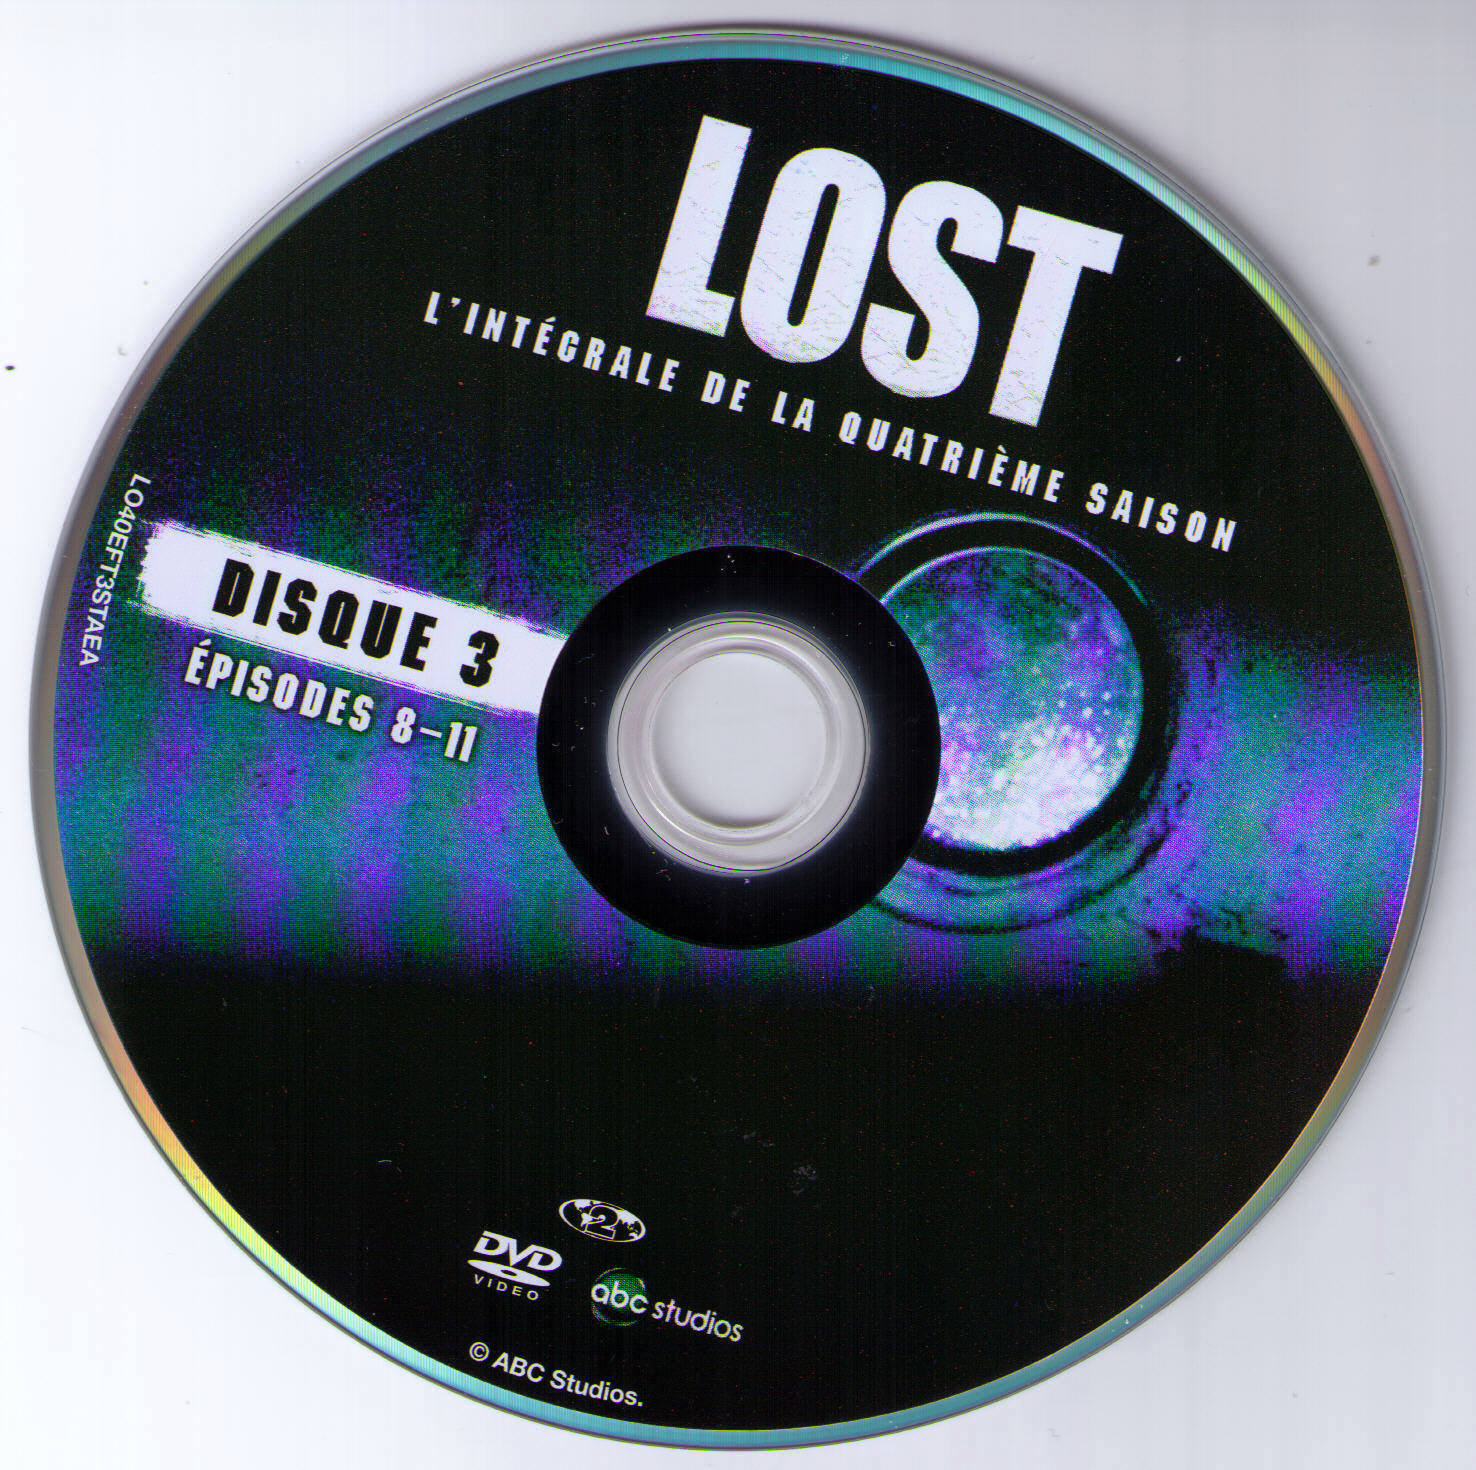 Lost Saison 4 DISC 3